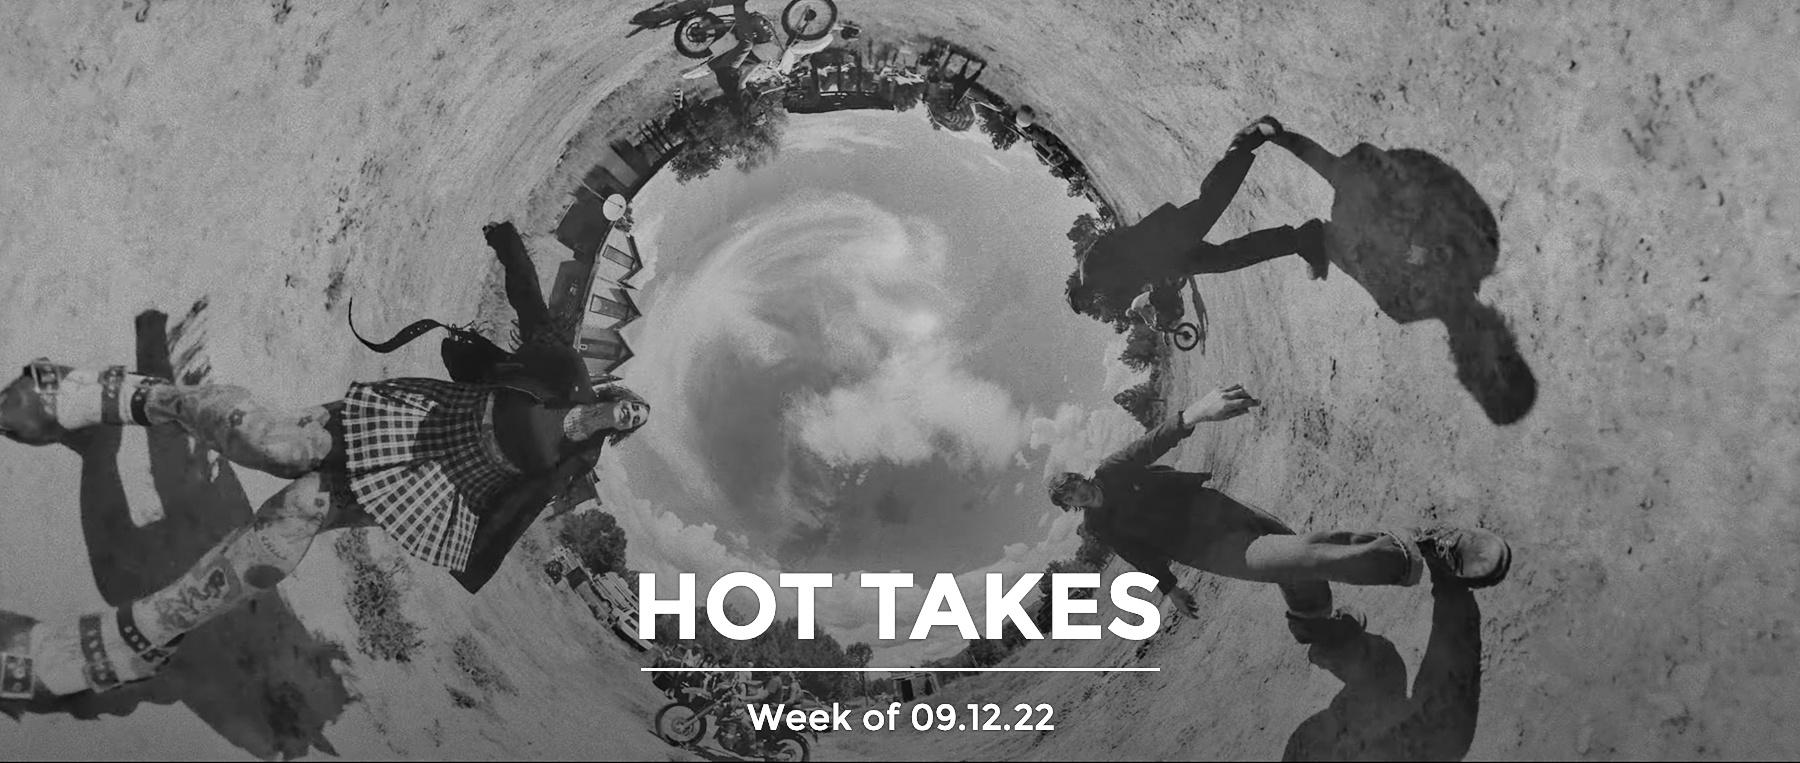 #HotTakes | Week of 09.12.22